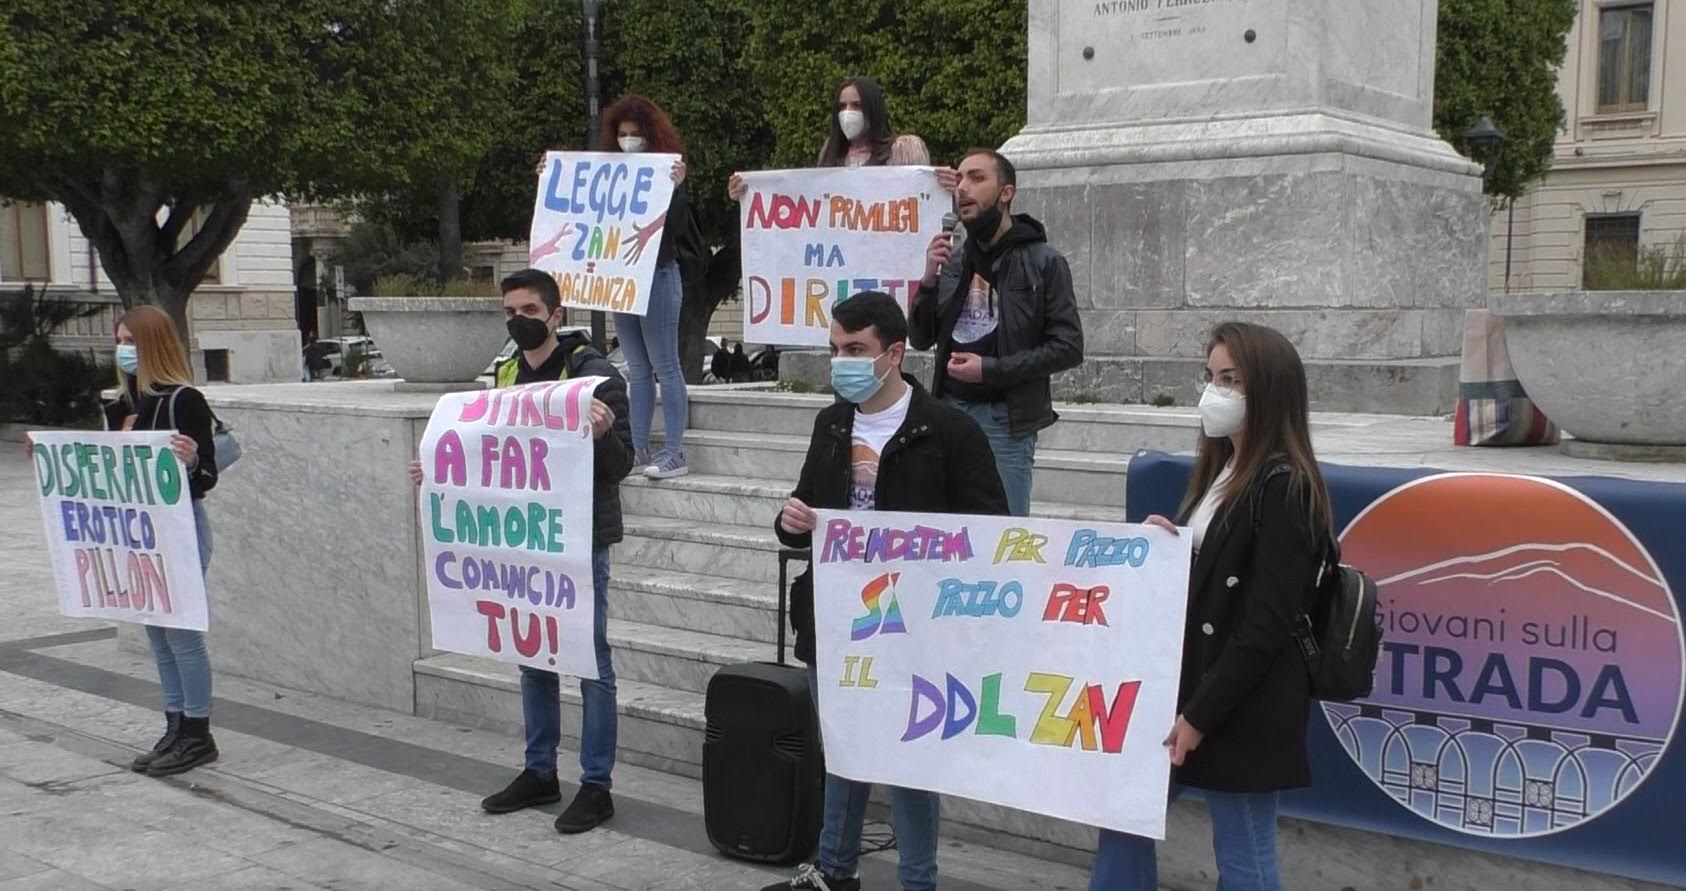 Reggio, sit-in dei Giovani sulla Strada per il ddl Zan e per le vittime di omotransfobia